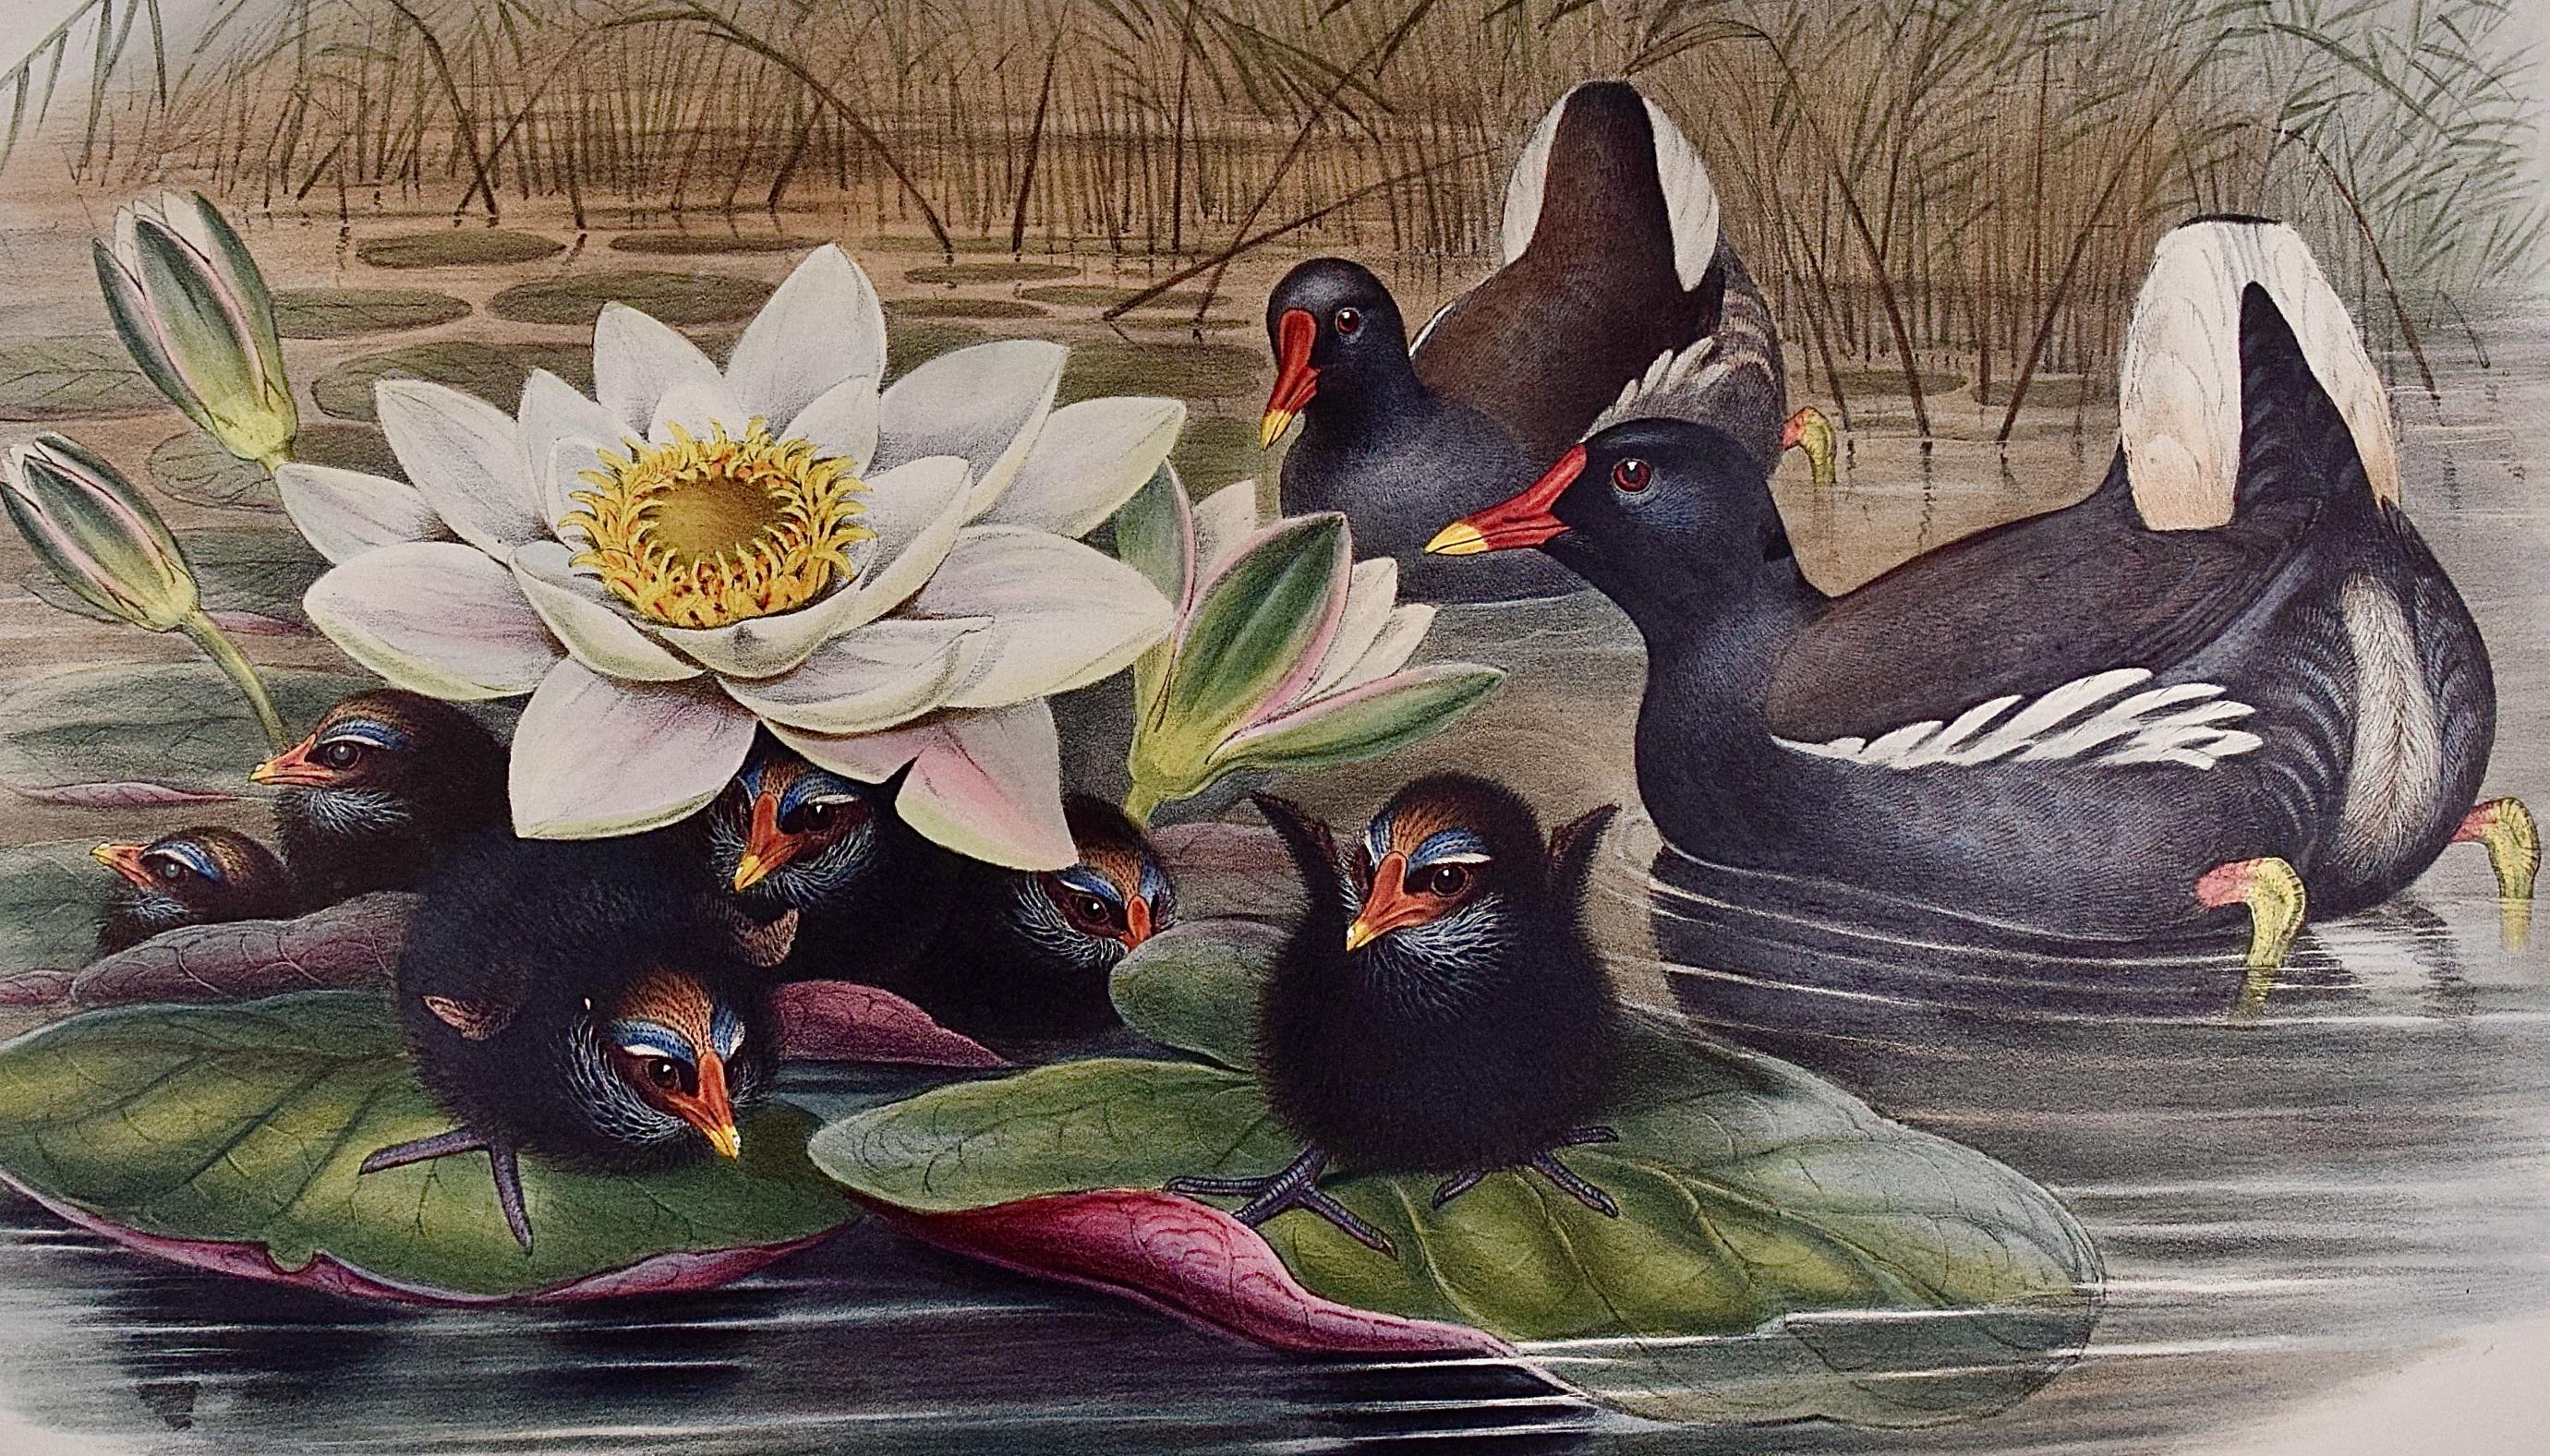 Une famille de moorhens & Lilly Pad : une lithographie colorée à la main par Gould, XIXe siècle - Naturalisme Print par John Gould and Henry Constantine Richter